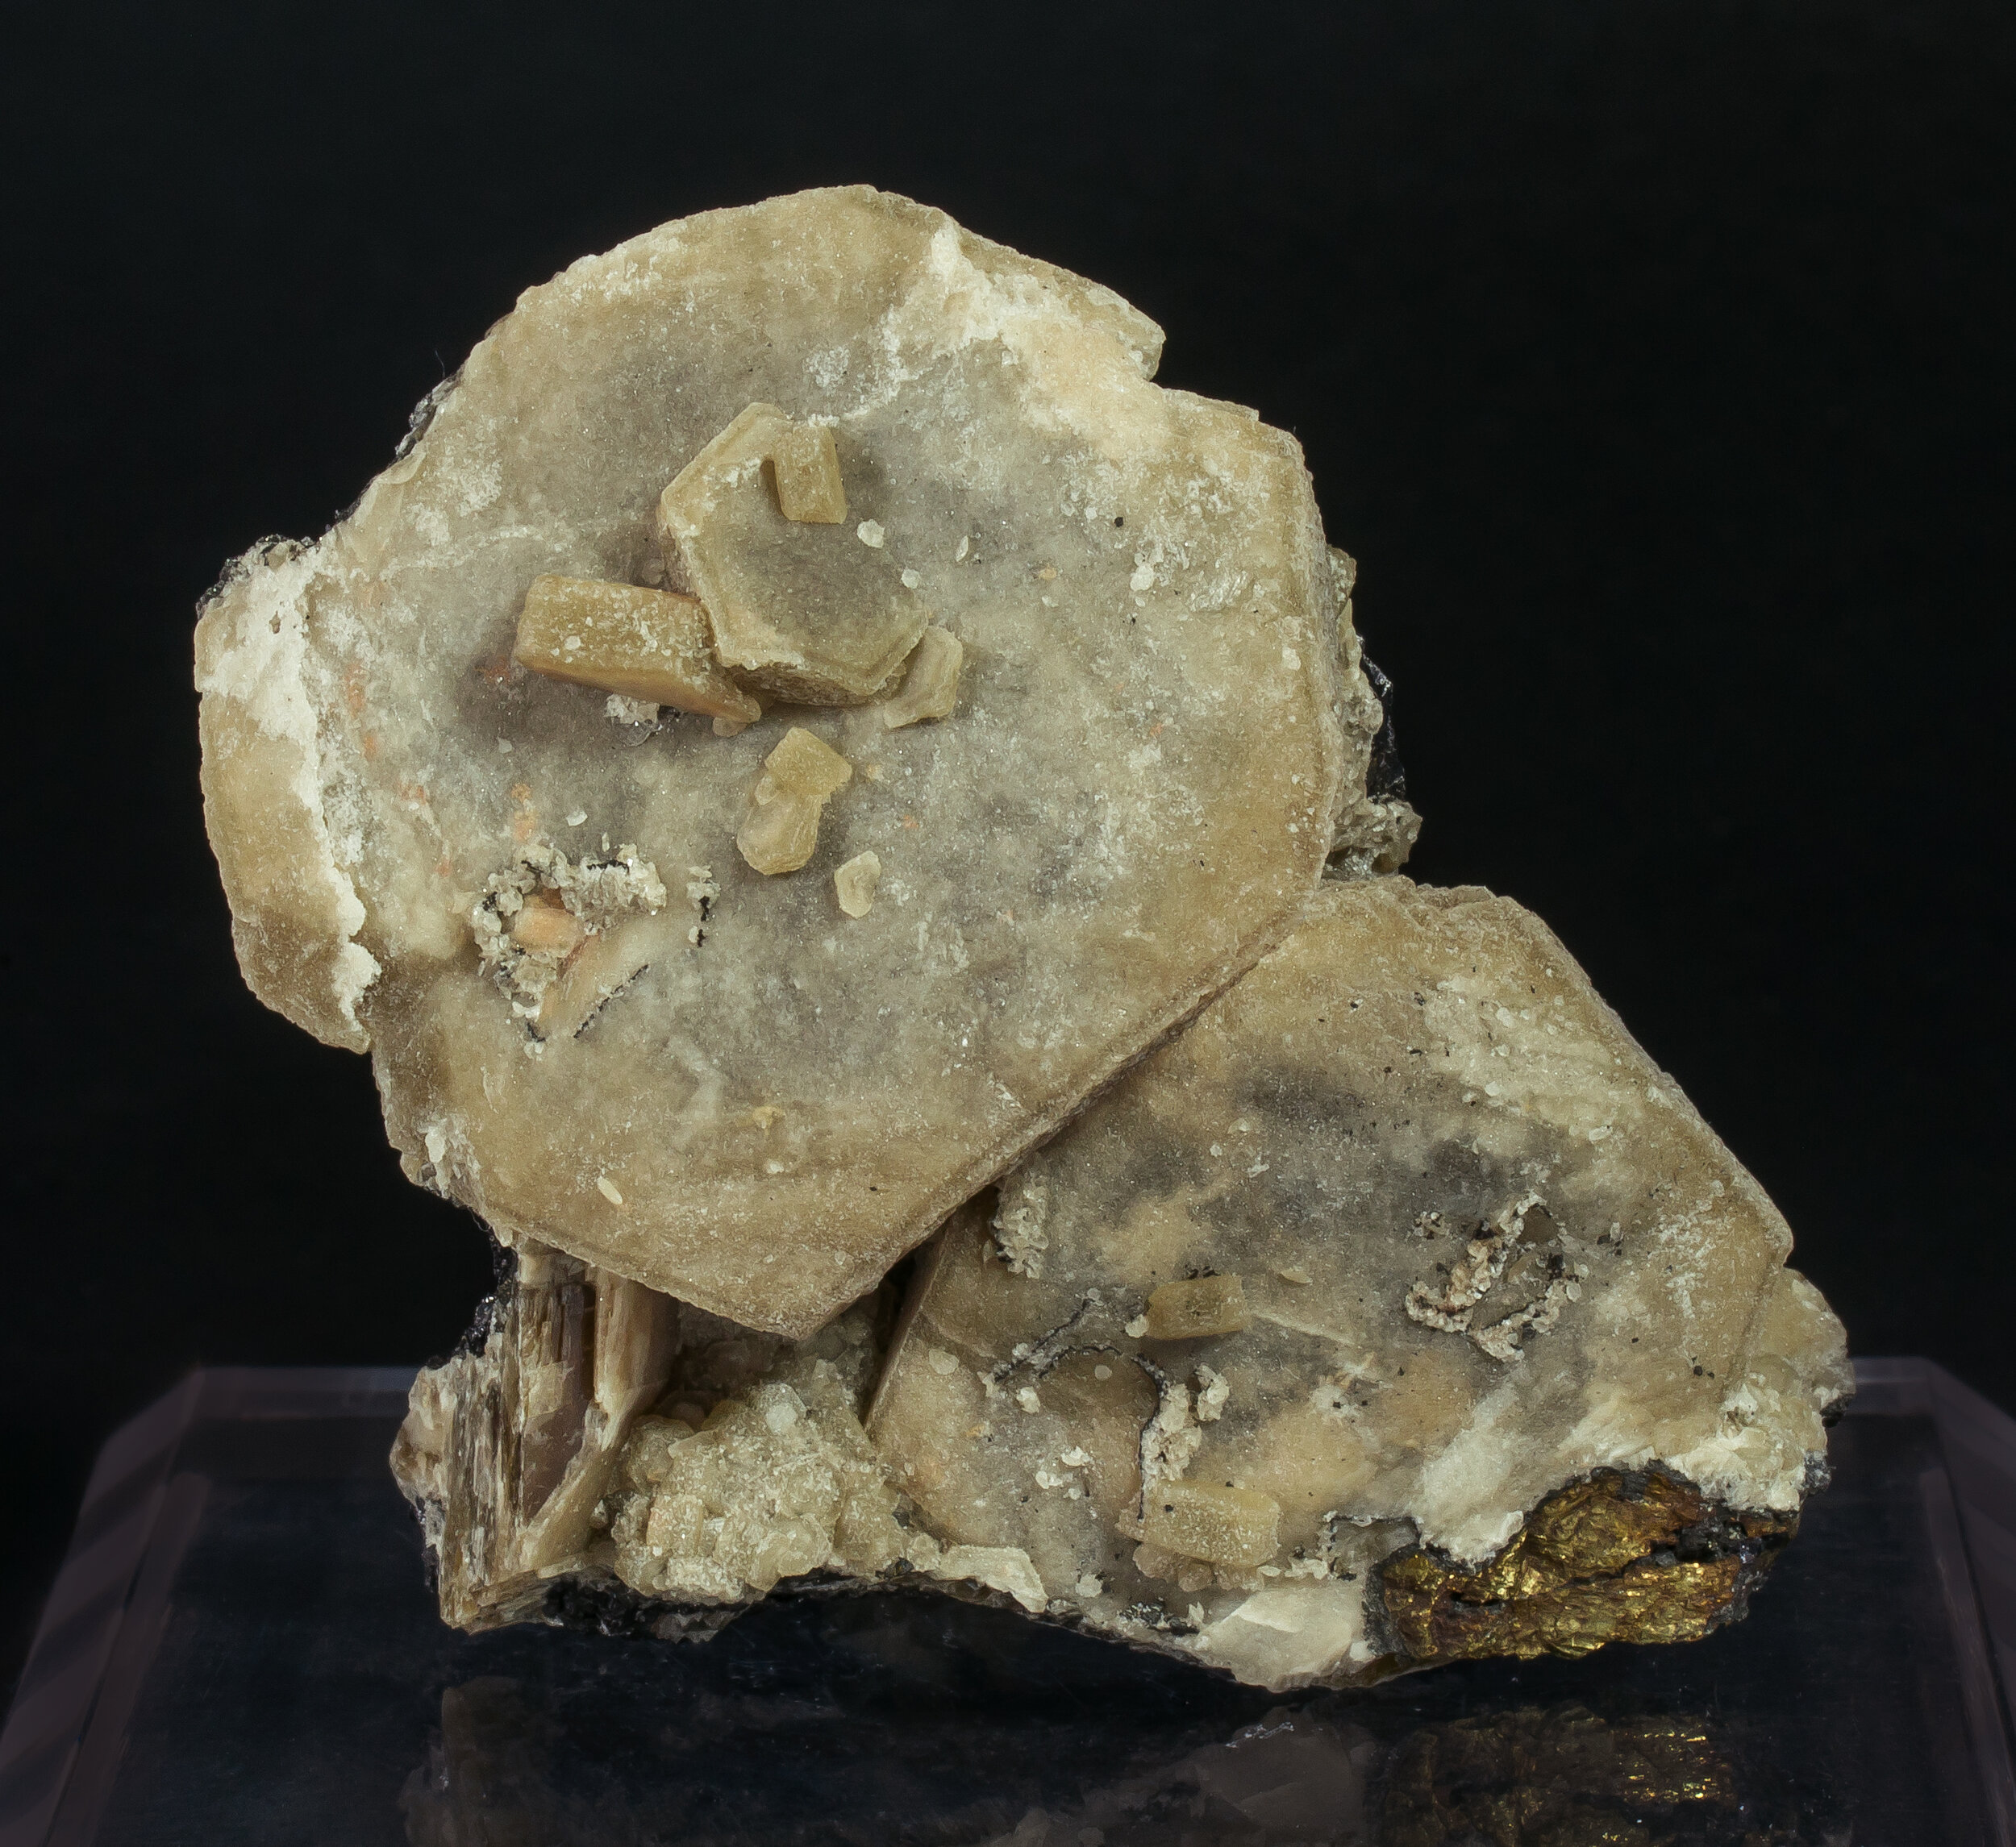 specimens/s_imagesCM/Arsenopyrite-16NA90_r.jpg